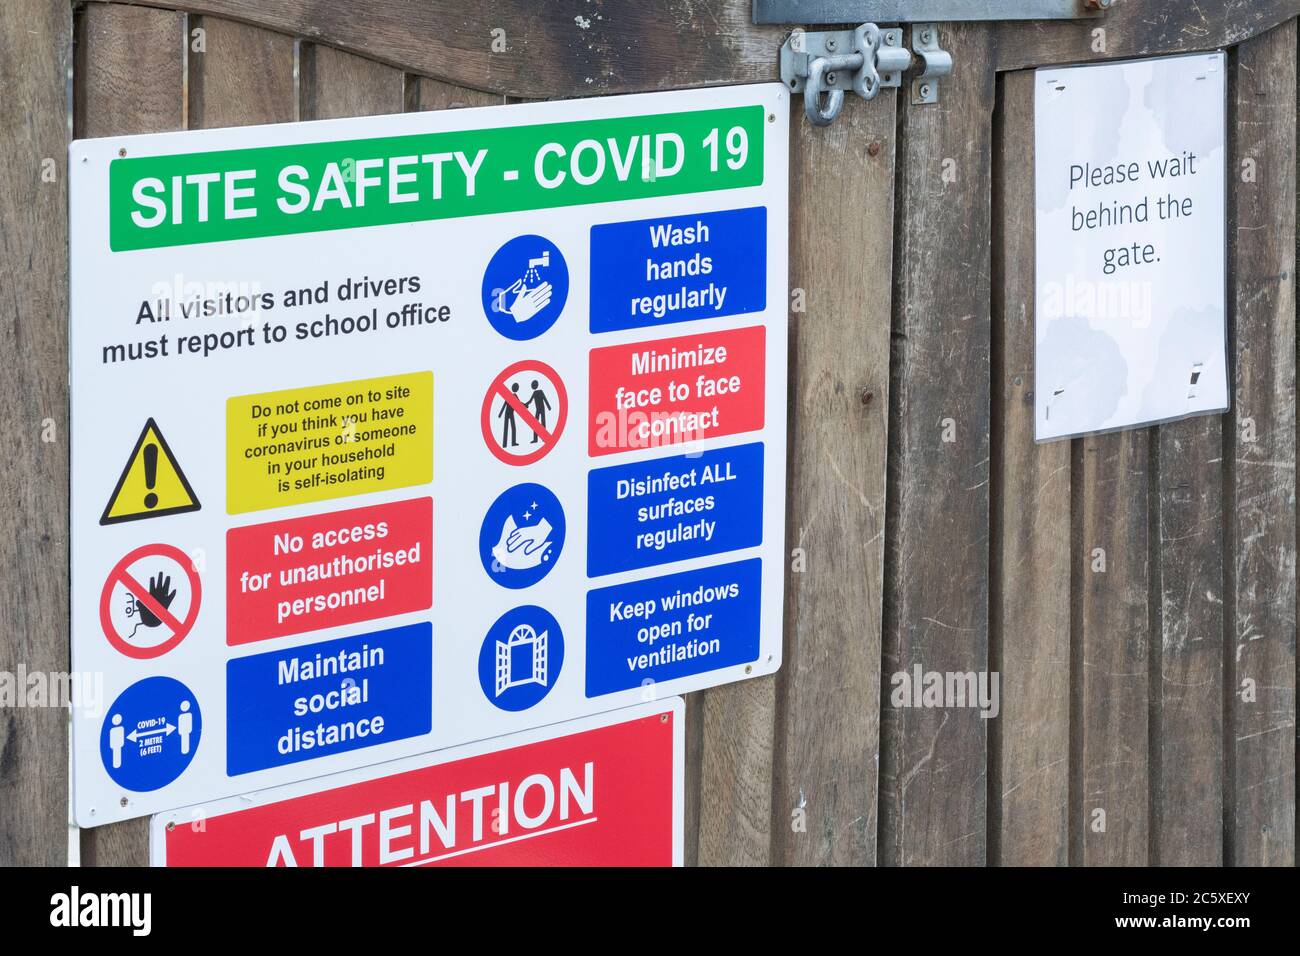 CV19, Covid-19 panneaux d'avertissement et pictogrammes d'avertissement relatifs aux mesures de sécurité sur le site de l'école. À la porte de l'école primaire St. Winnow, Lostwithiel, Cornwall. Banque D'Images